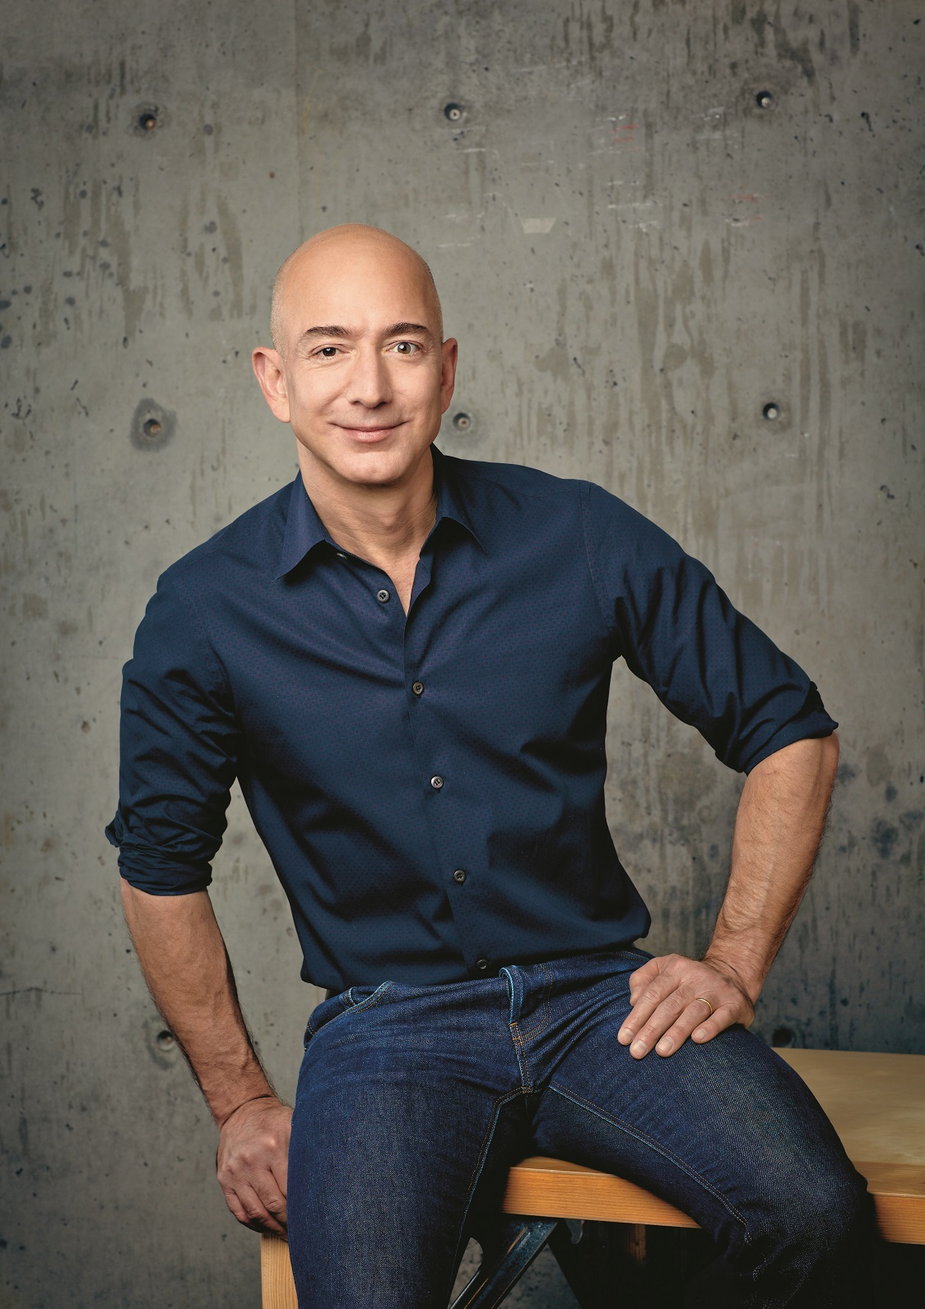 Jeff Bezos, najbogatszy człowiek świata, wstaje wcześnie rano nie po to, by pracować, ale by napić się kawy i poczytać gazetę 